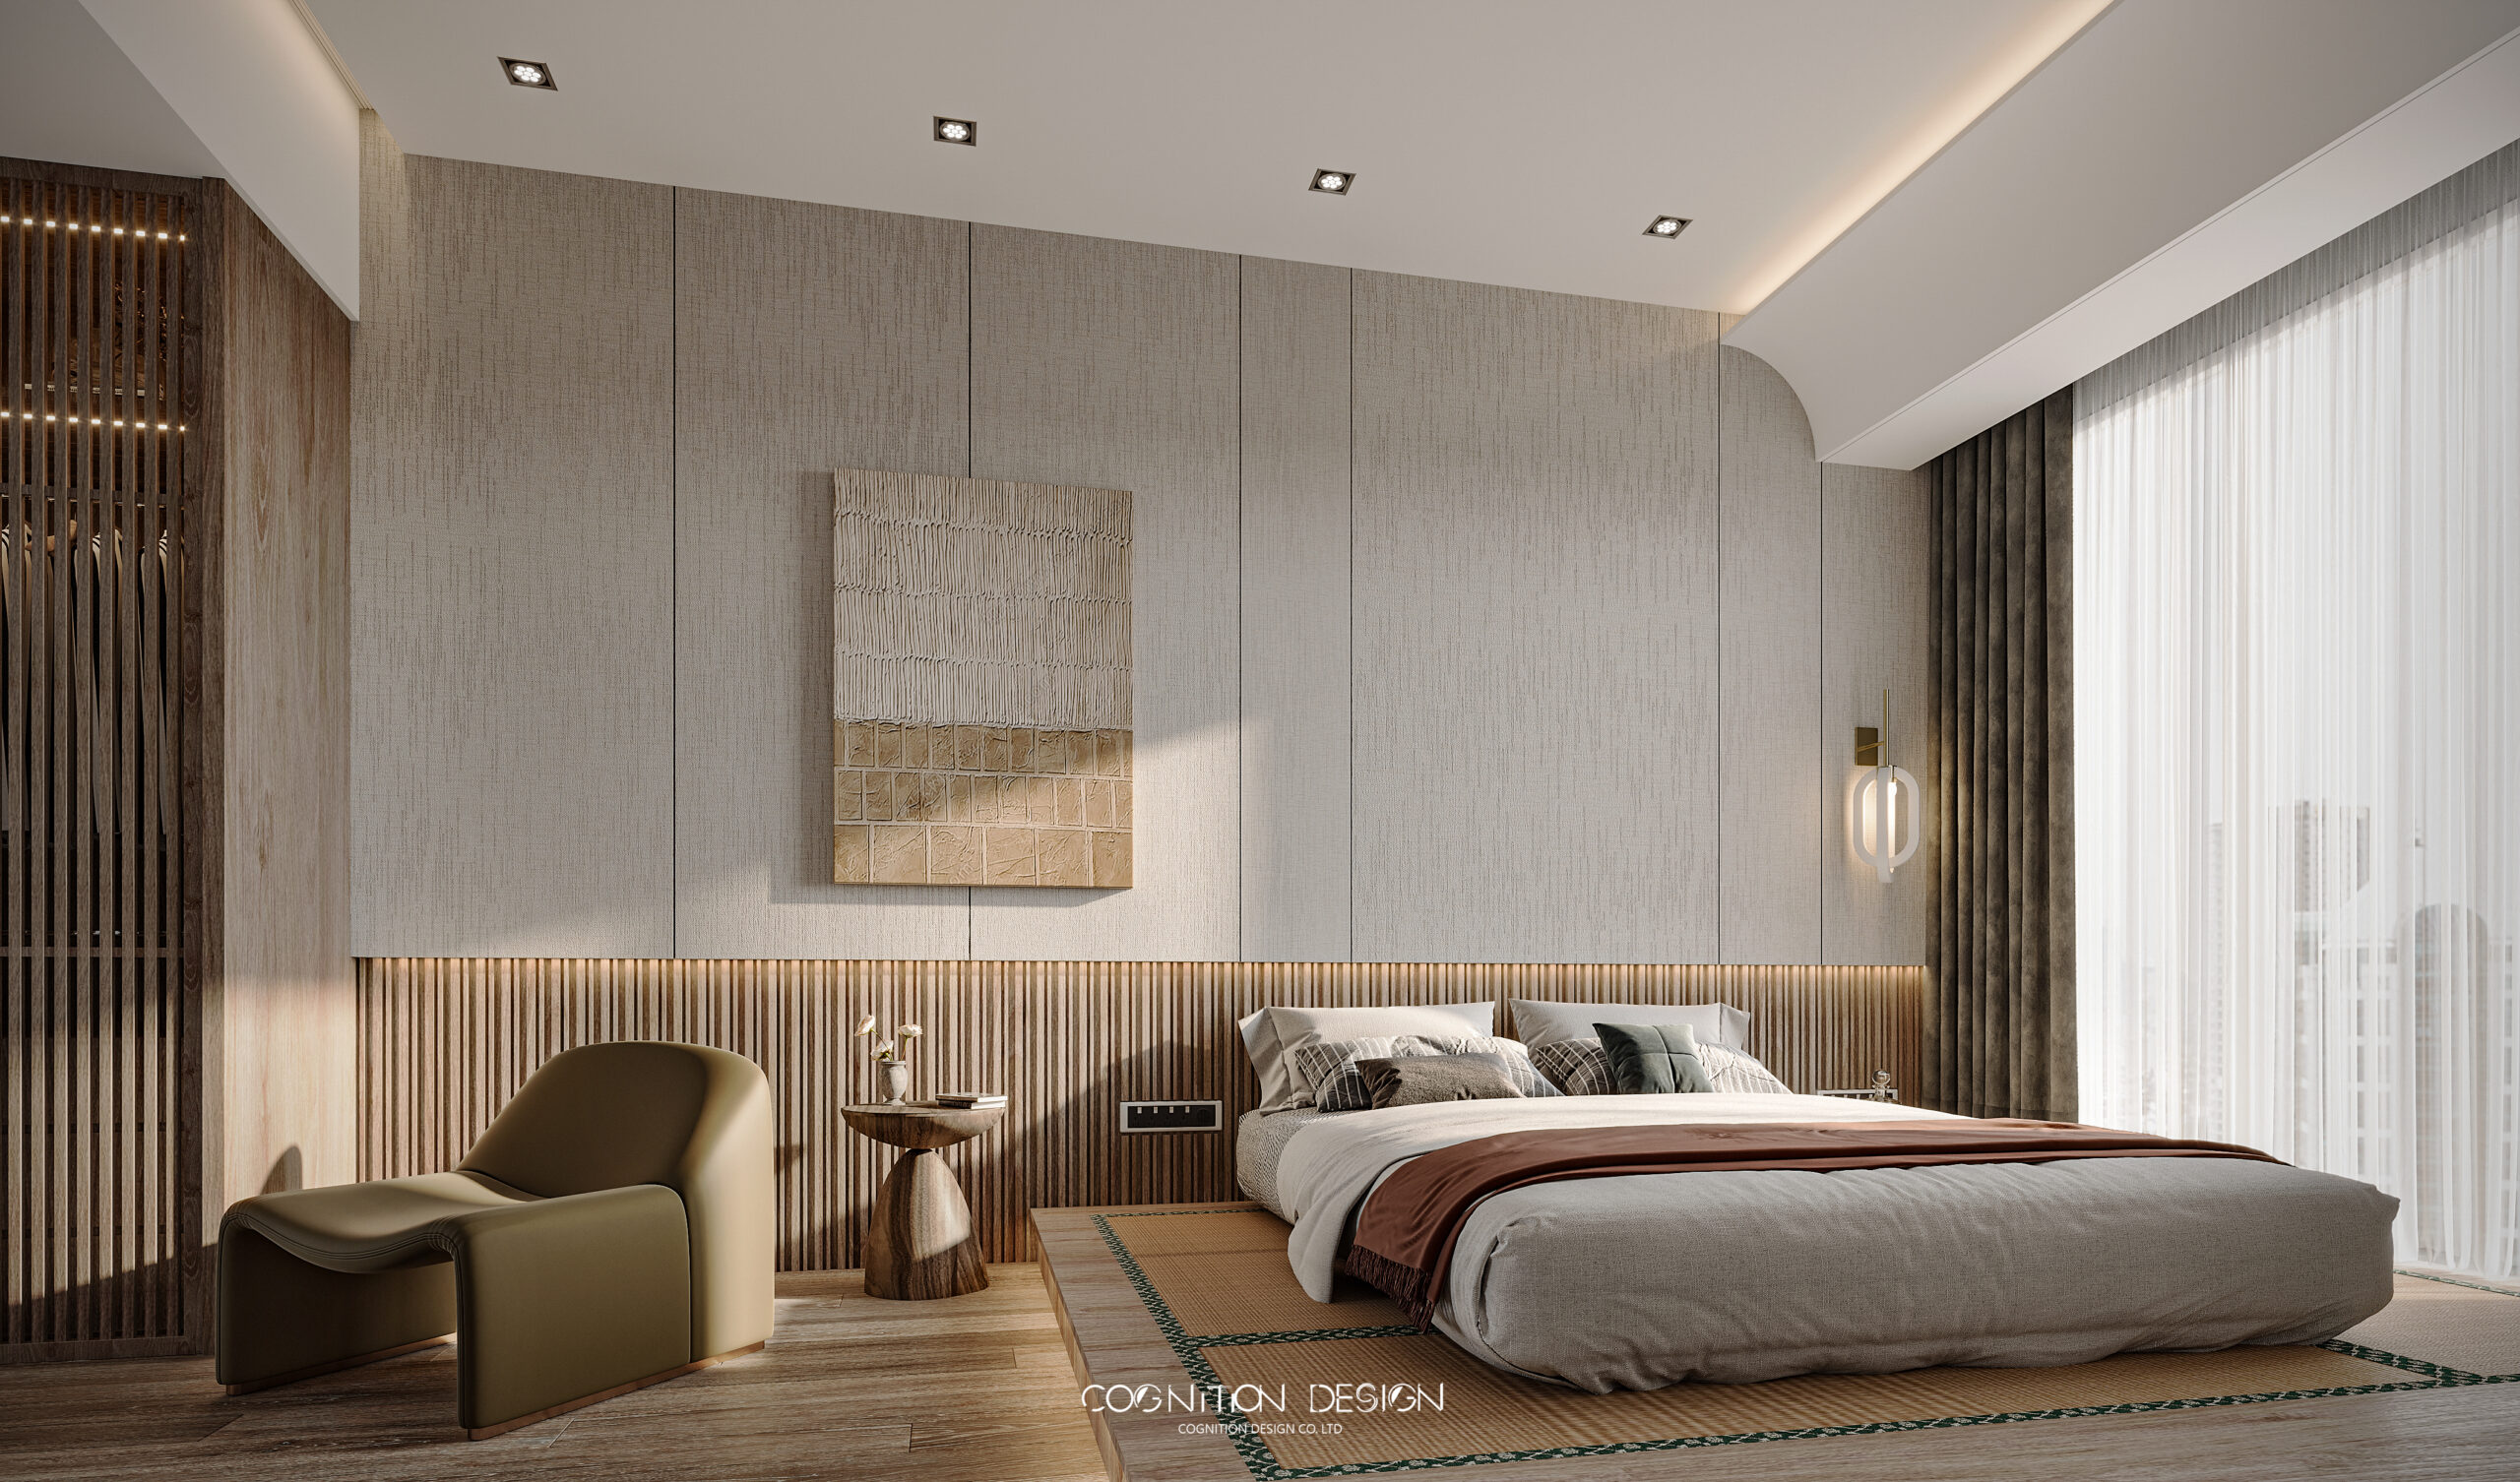 臥室以日式榻榻米為發想，加入一些原始材質例如實木格柵、榻榻米等元素，結合現代居住習慣